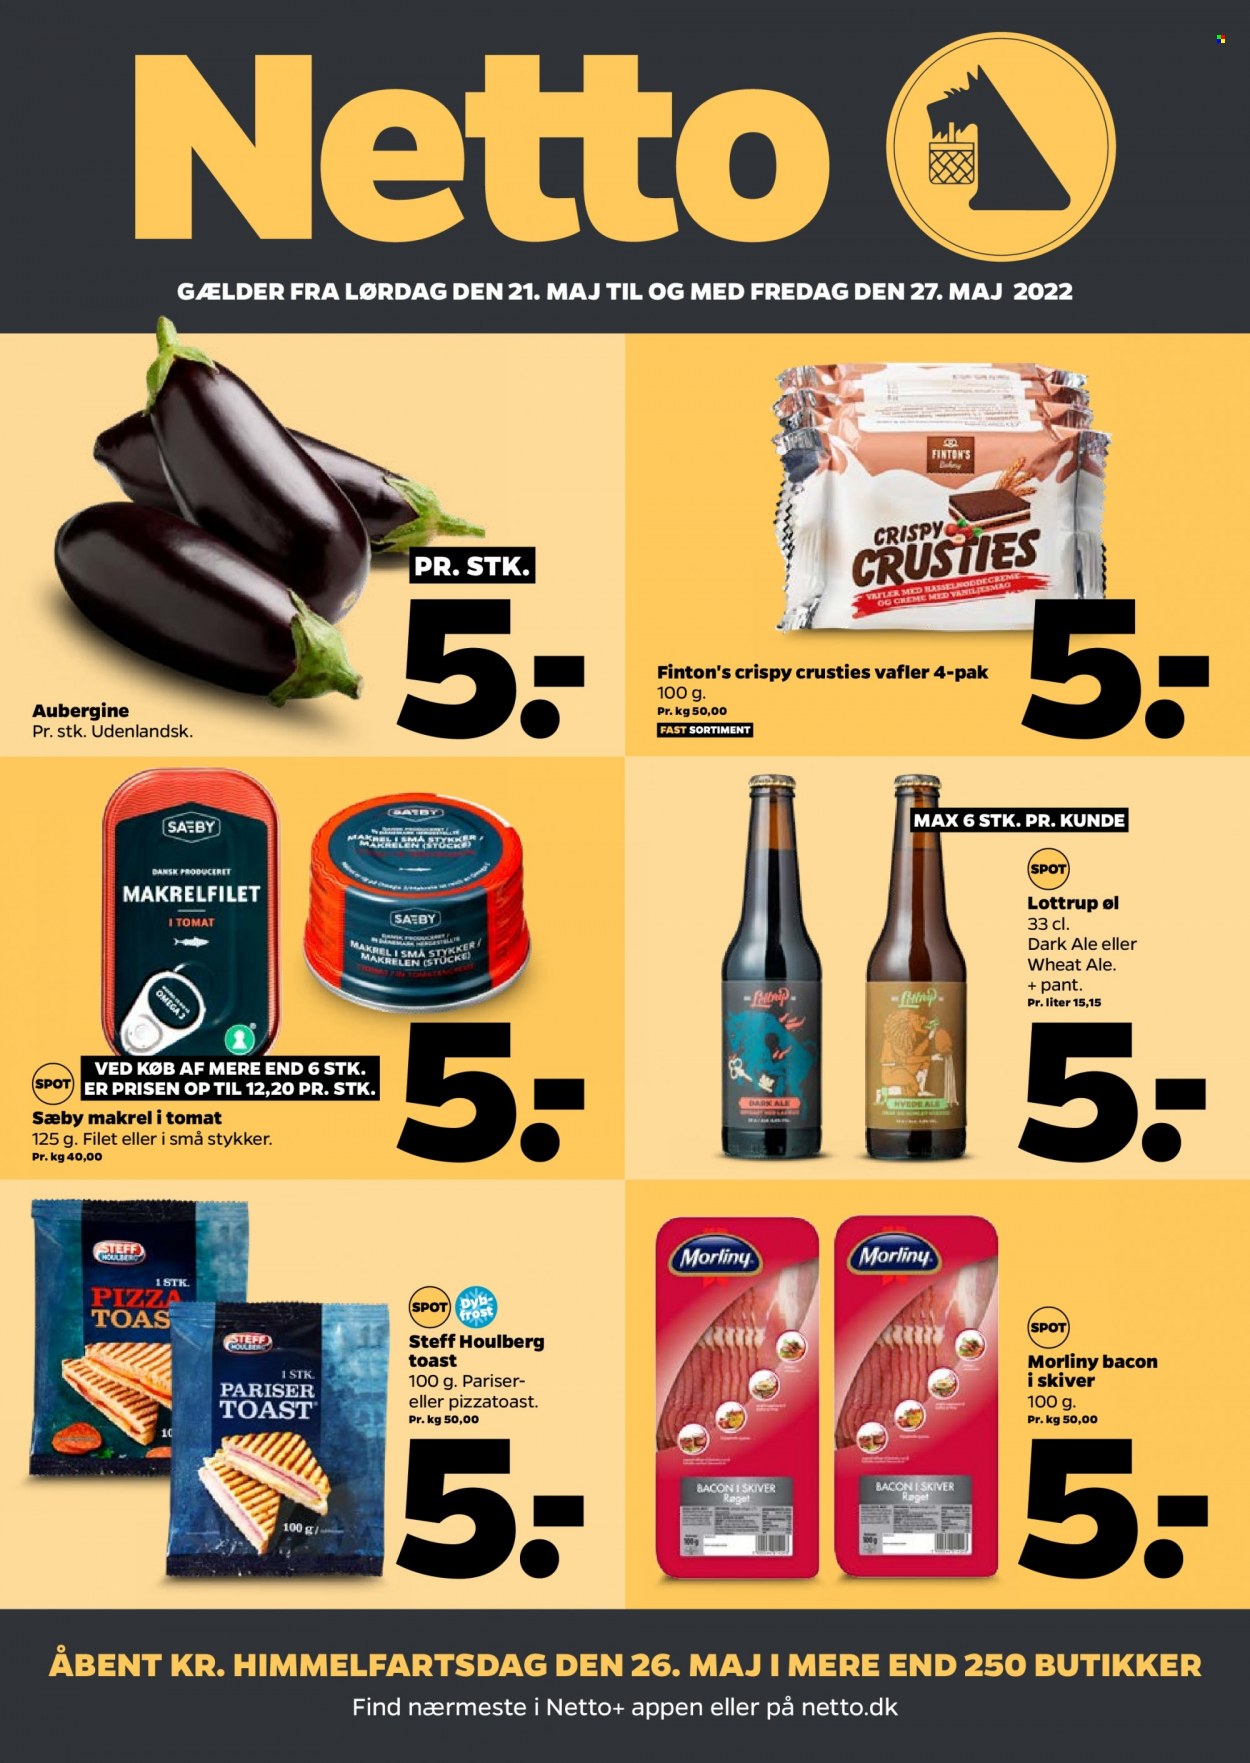 thumbnail - Netto tilbud  - 21.5.2022 - 27.5.2022 - tilbudsprodukter - aubergine, øl, vafler, makrel, makrelfileter, pizza, Steff Houlberg, bacon. Side 1.